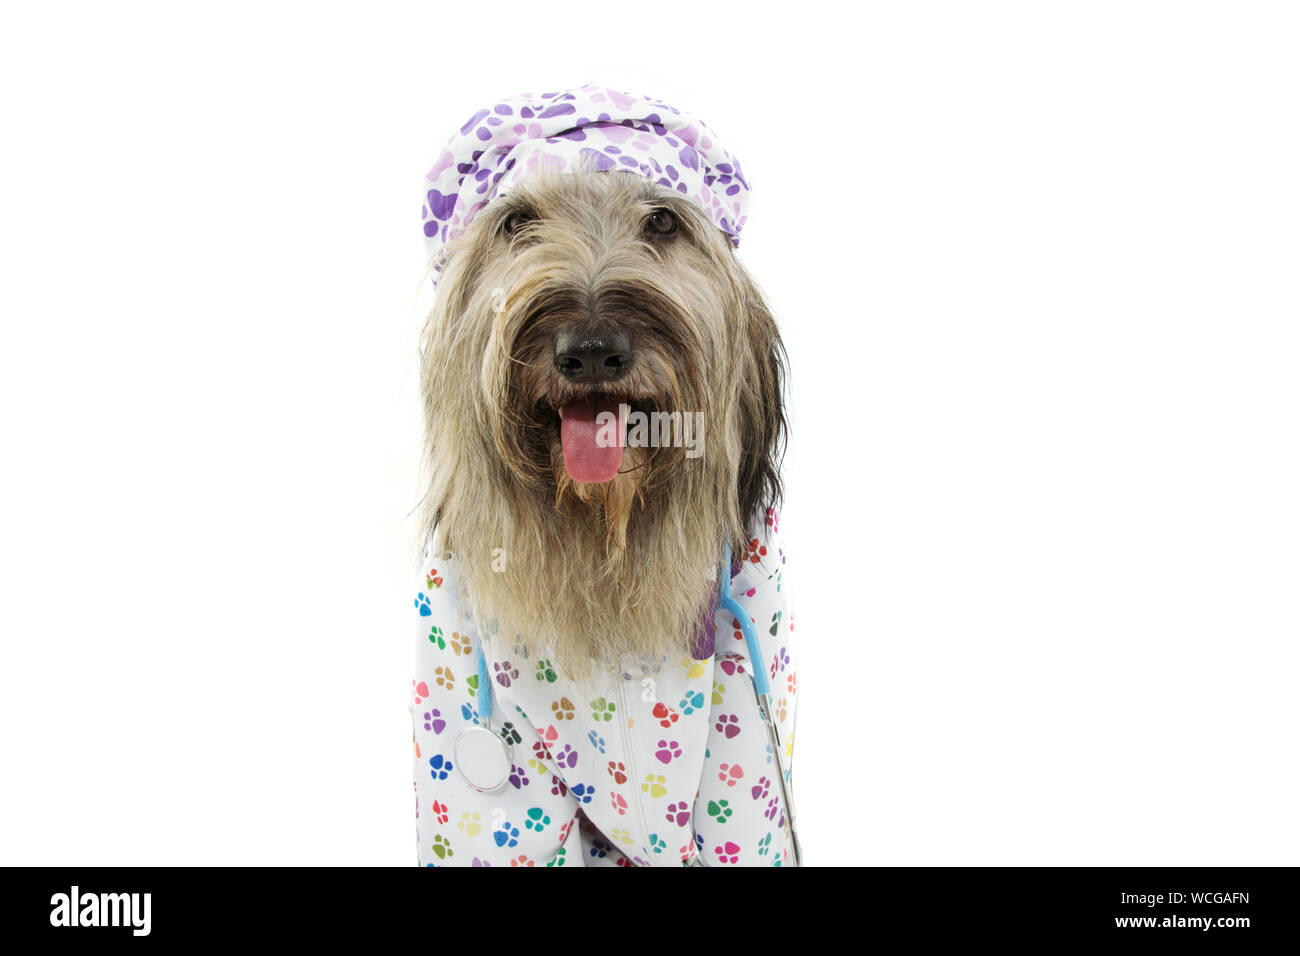 Hund gekleidet, wie die tierärztliche tragen Stethoskop, Krankenhaus, kleid und hut. Auf weissem Hintergrund. Stockfoto